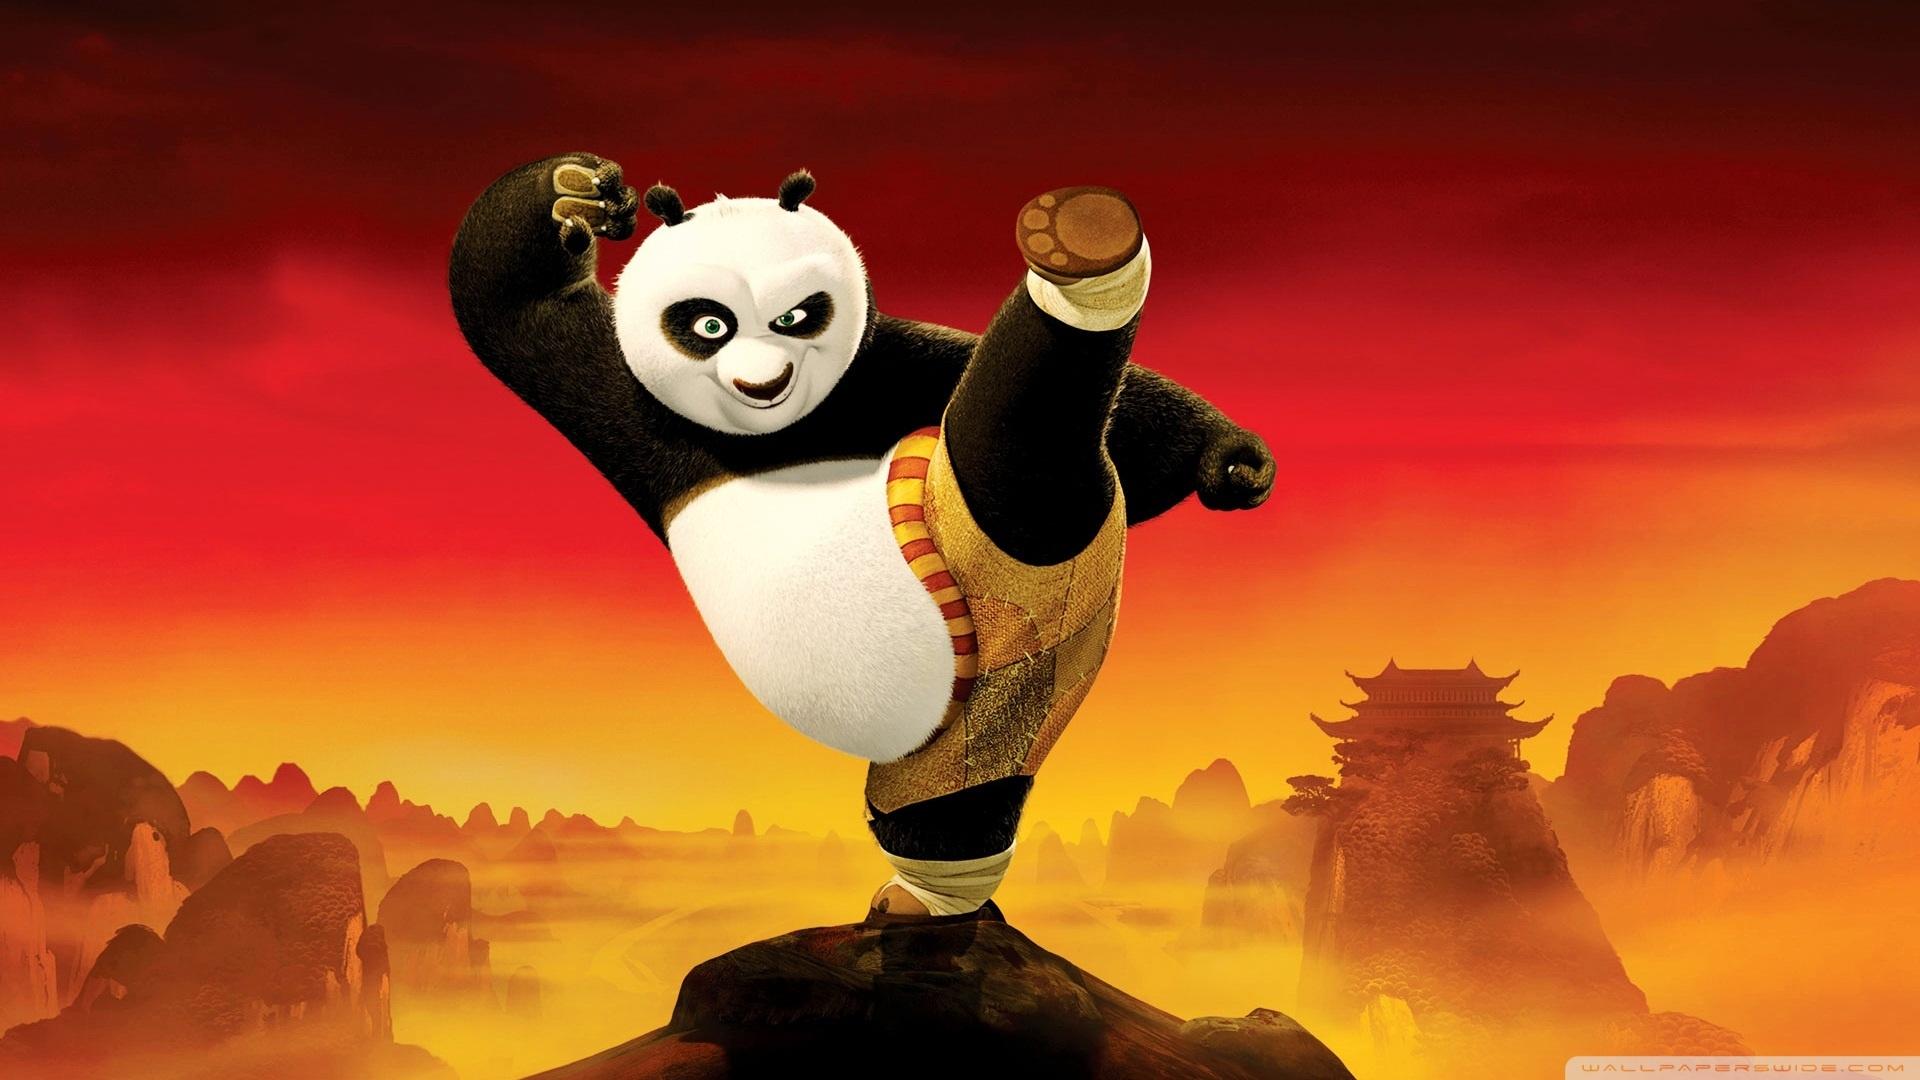 Kung Fu Panda 2 at 2048 x 2048 iPad size wallpapers HD quality